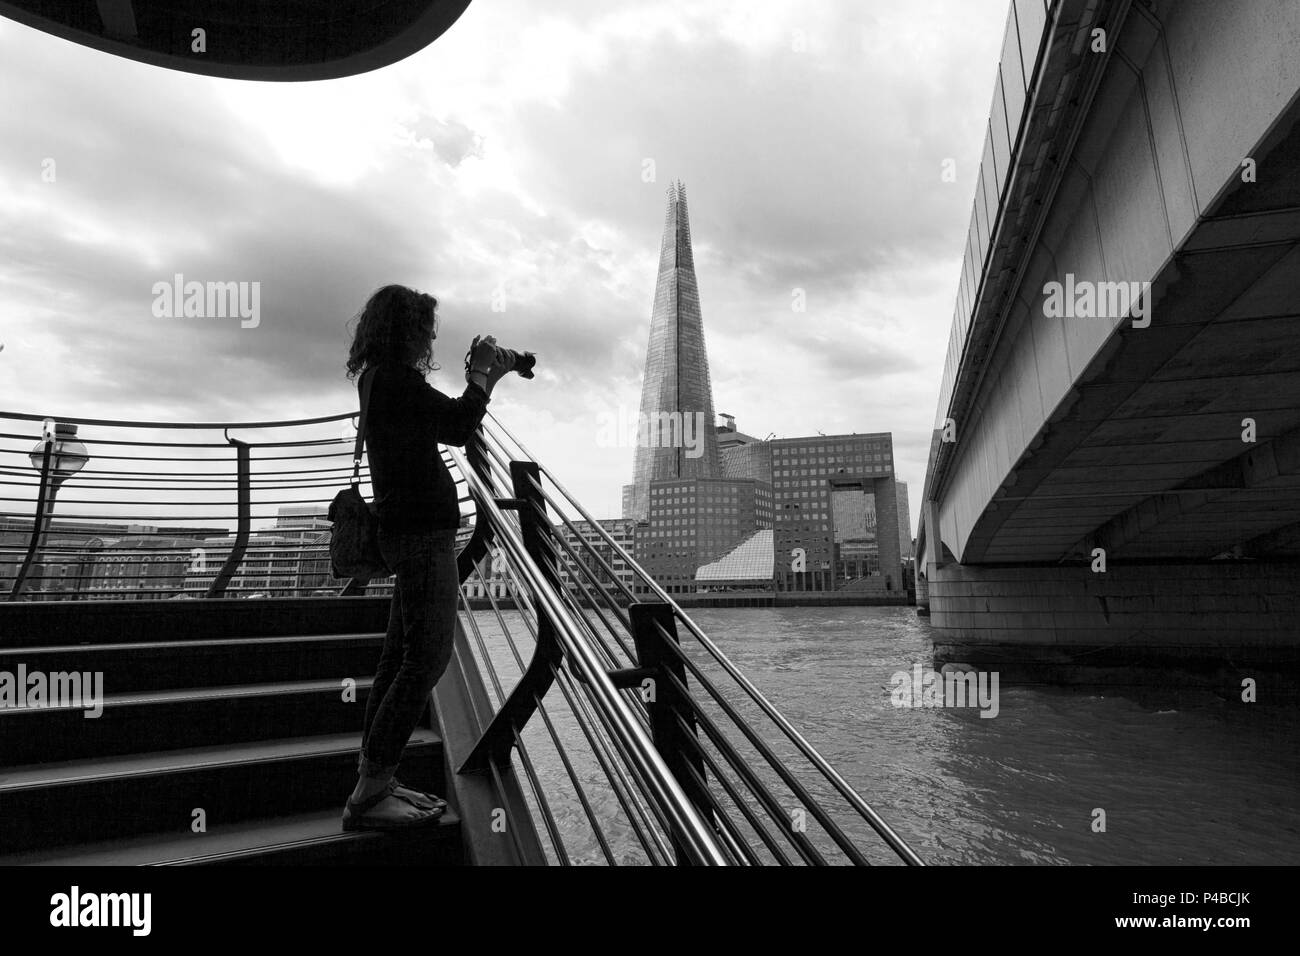 Un touriste photographie le shard London Bridge avec sur l'arrière-plan, Londres, Grande-Bretagne, Royaume-Uni Banque D'Images